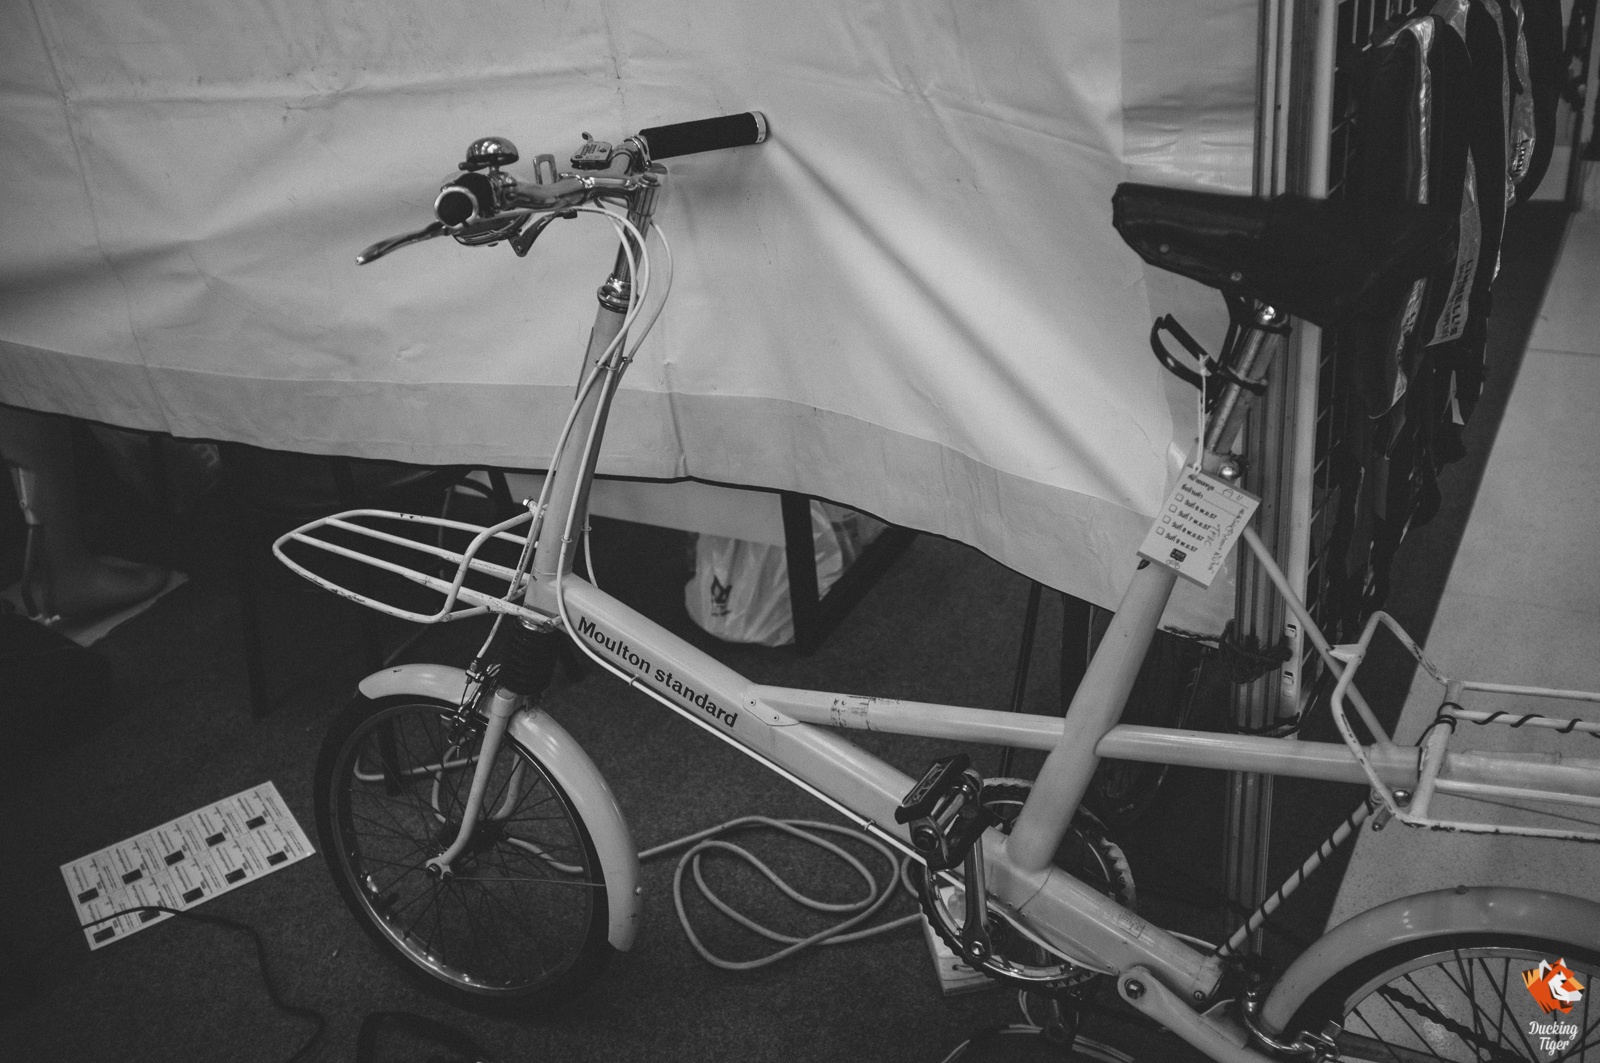 โมลตั้นสวยๆ ของบูทที่จัดงาน โพสต์นี้พอแค่นี้ก่อน แล้วมาต่อกันกับจักรยานวินเทจและผลงานทีสีสเกี่ยวกับจักรยานใน Part 3 ครับ